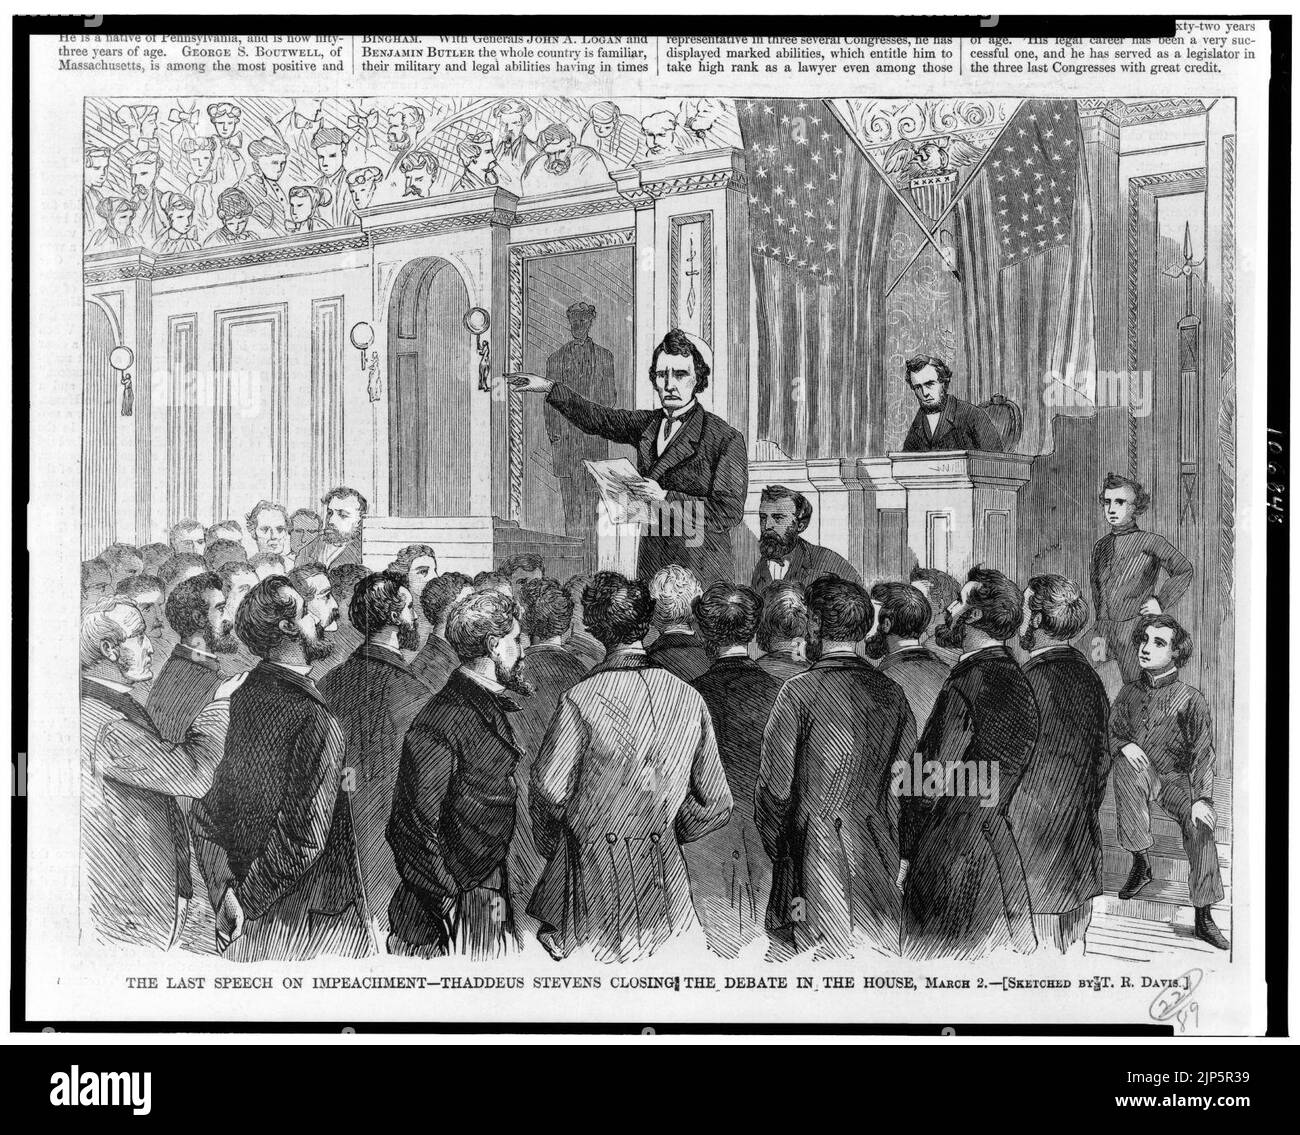 L'ultimo discorso sull'impeachment-Thaddeus Stevens che chiude la discussione in Aula, marzo 2 - disegnato dal T.R. Davis. Foto Stock